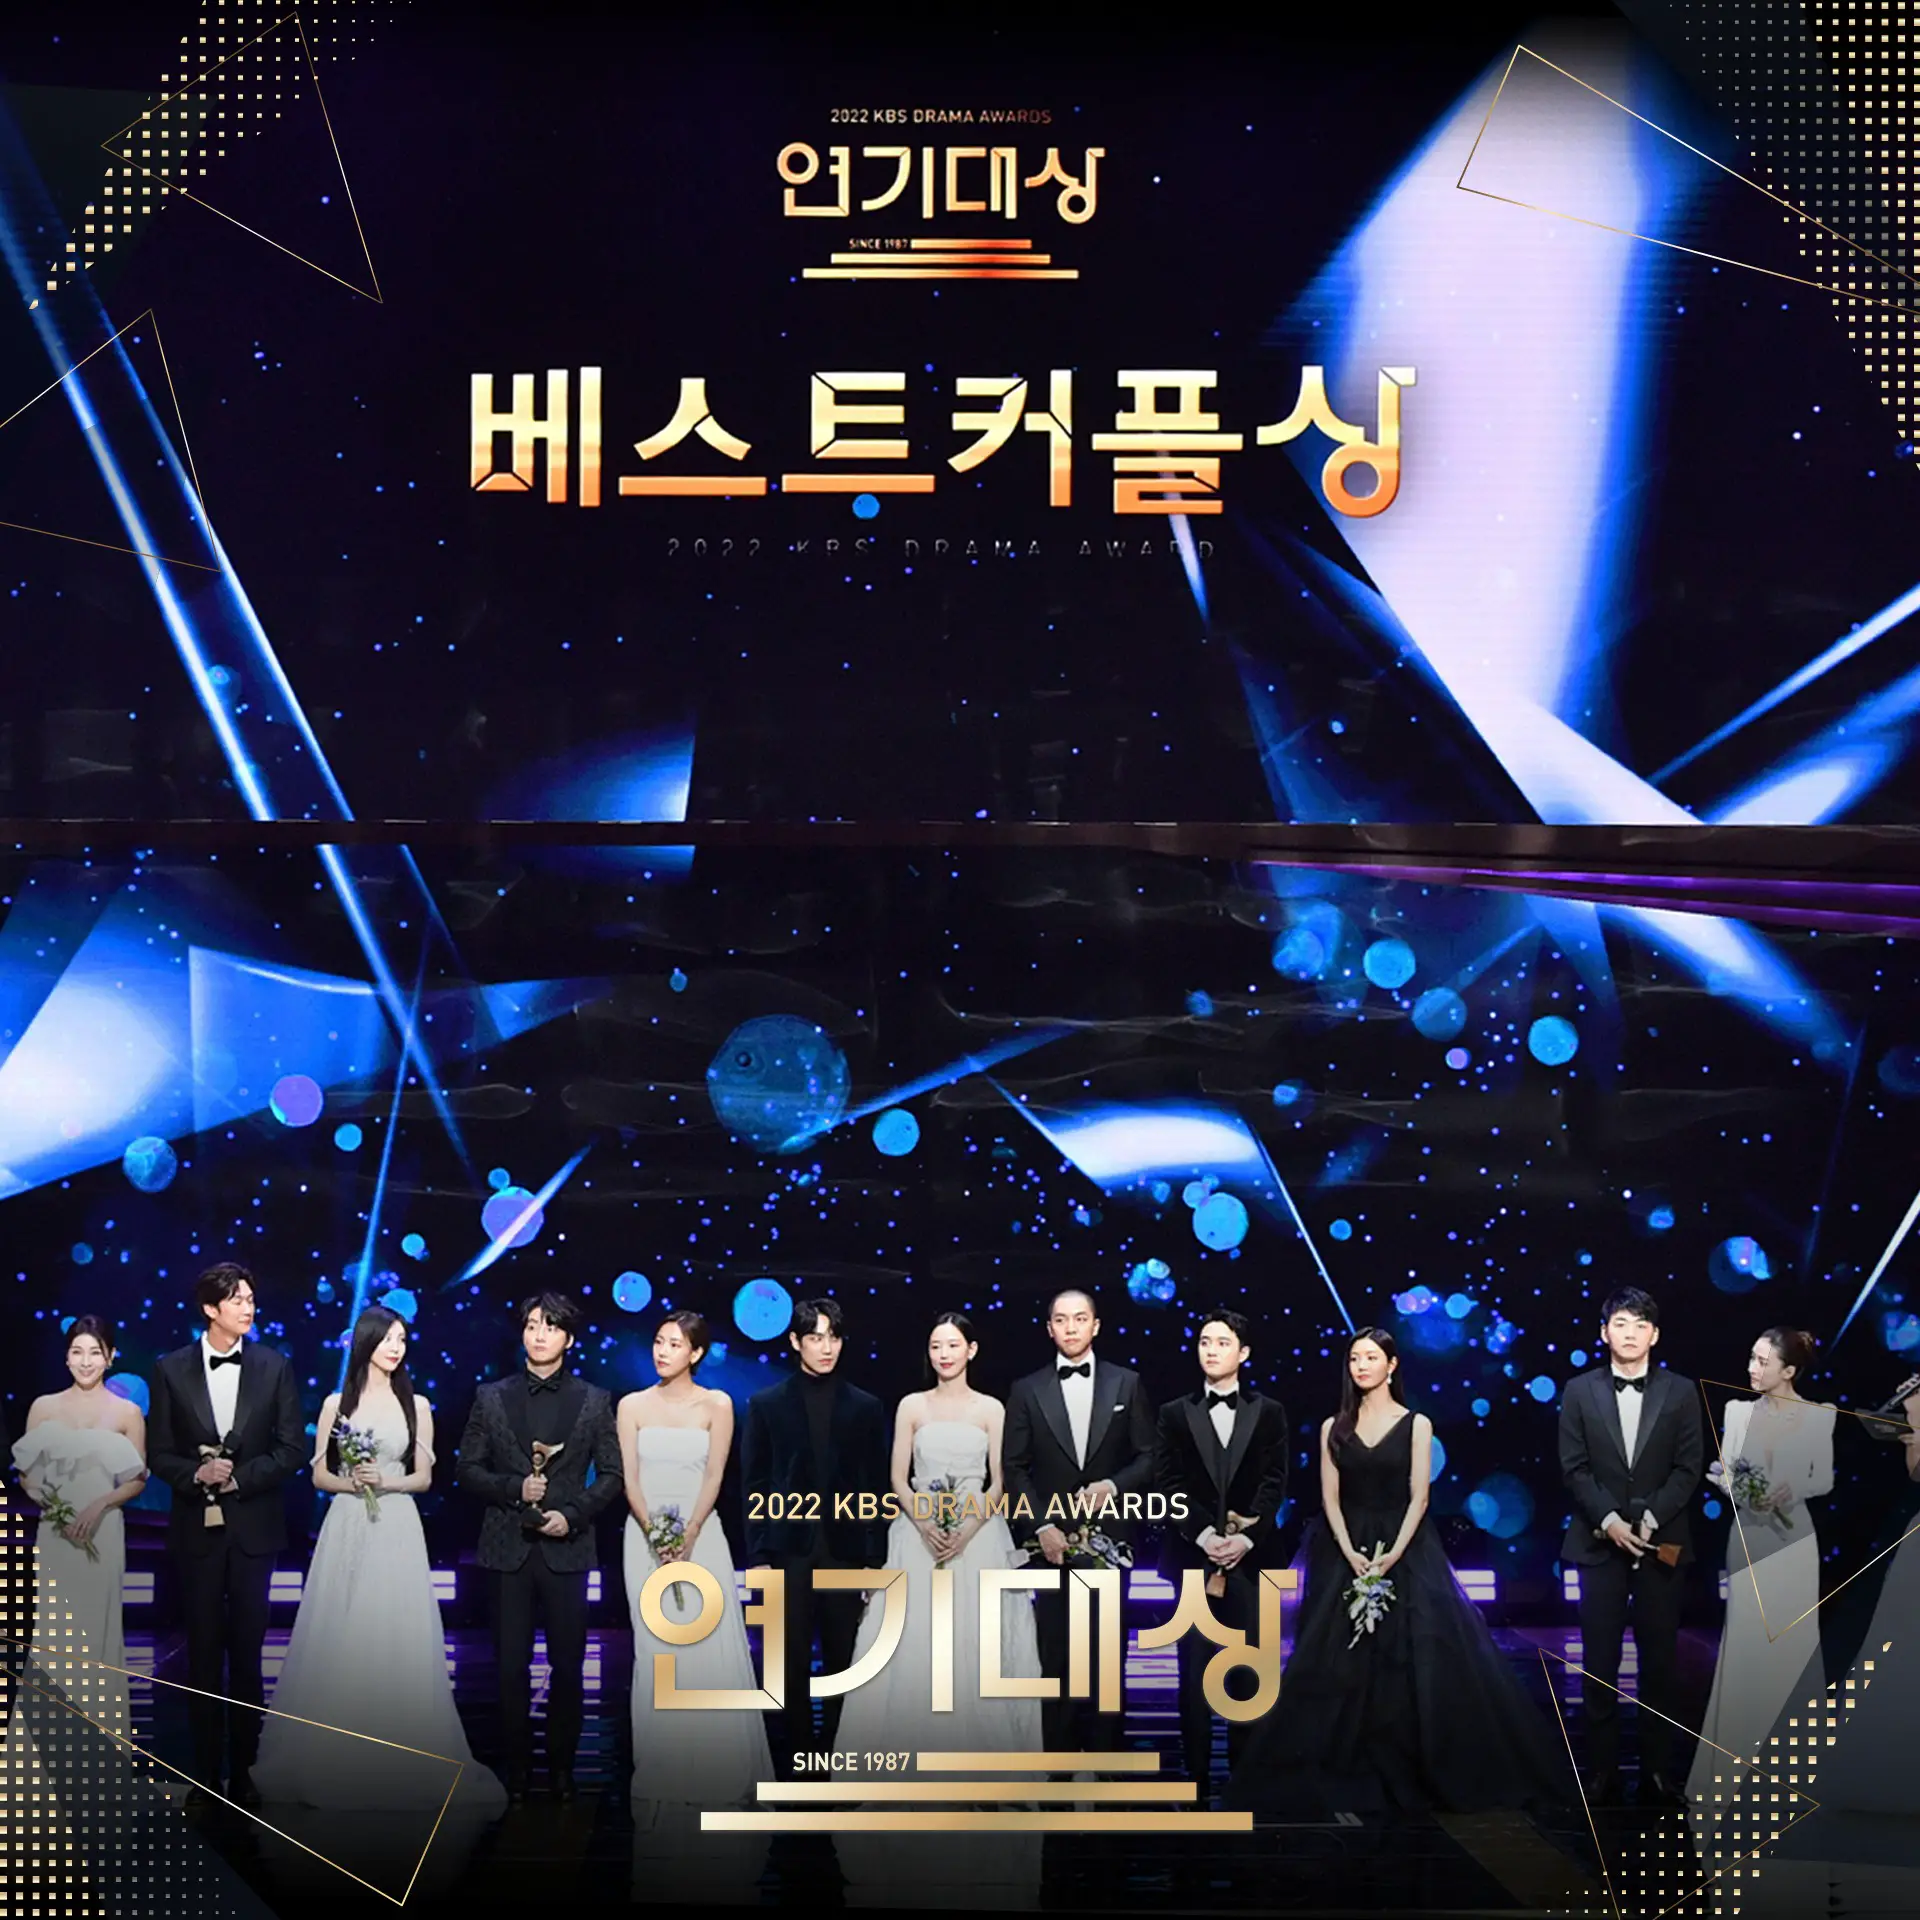 2022 KBS Drama Awards kdramadiary